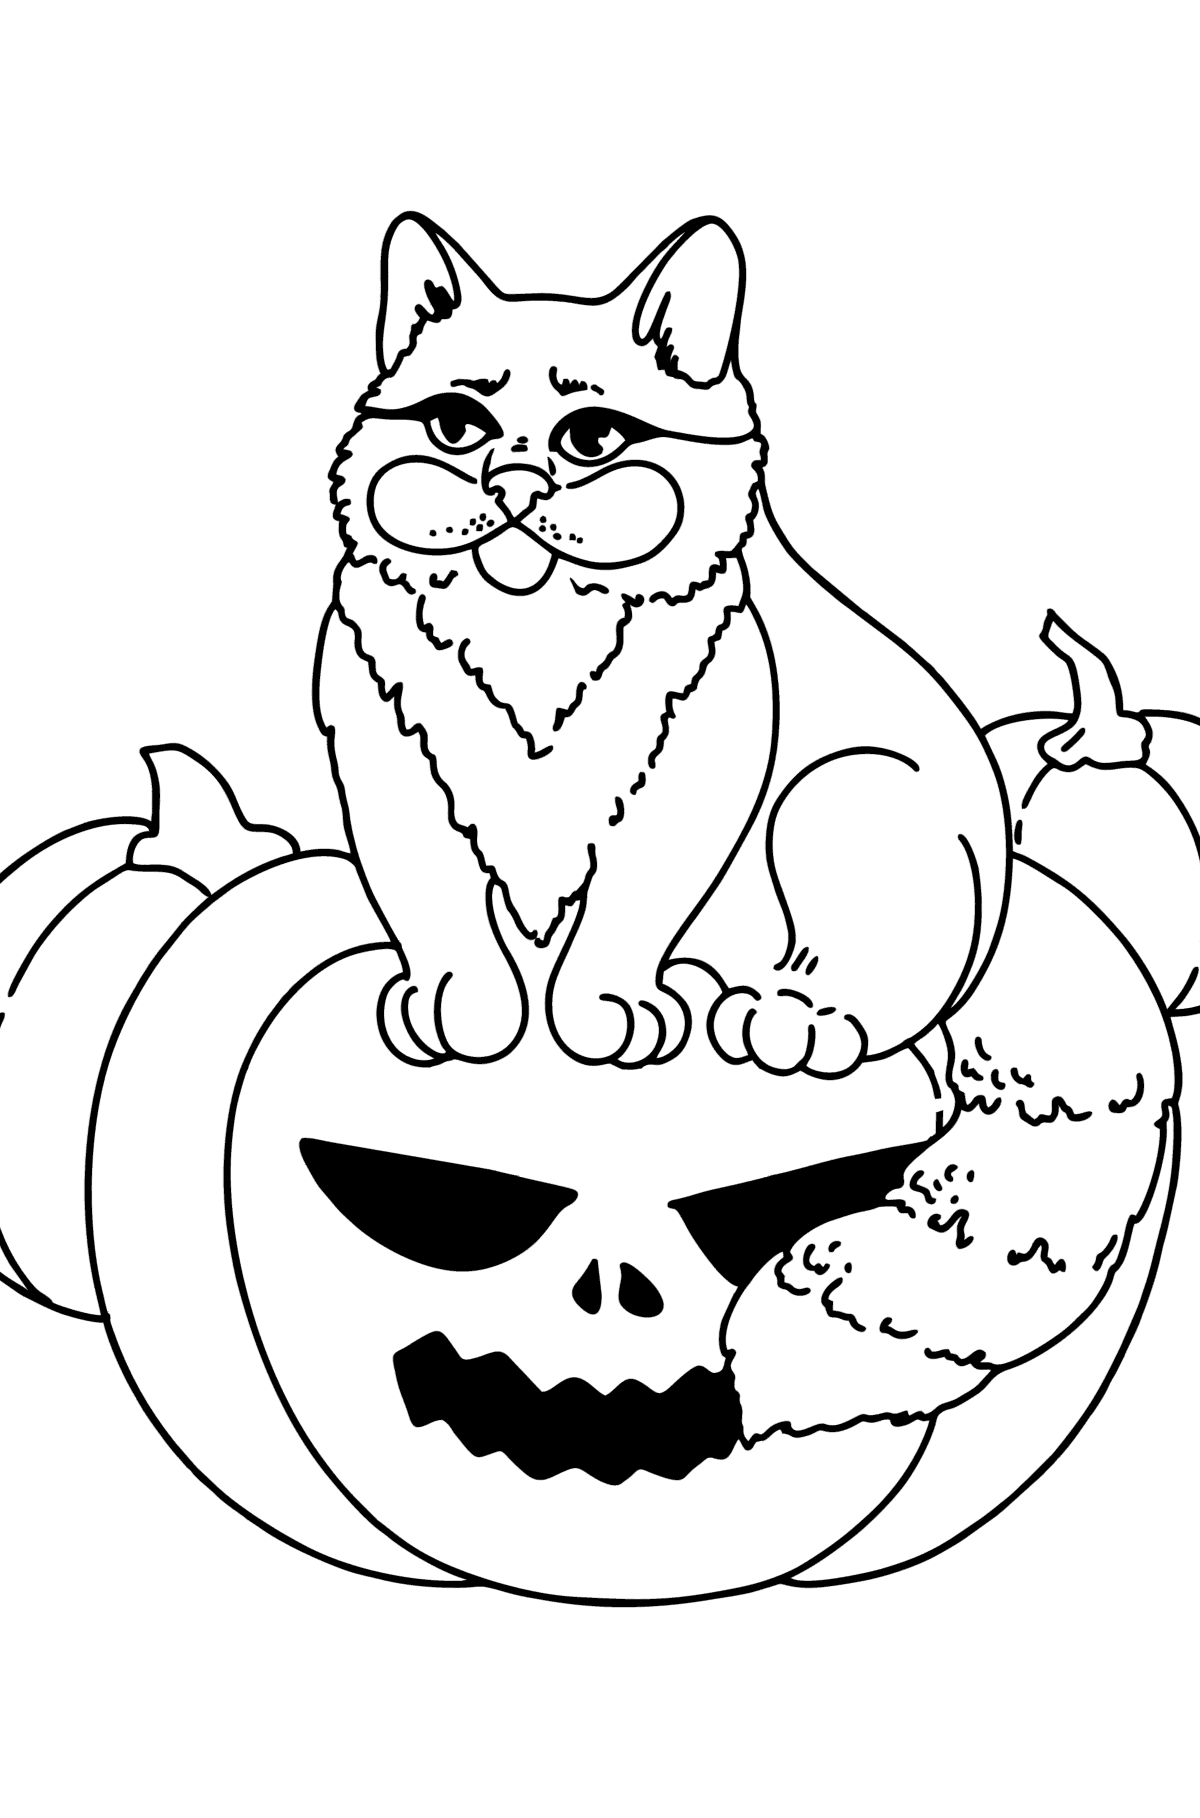 Disegno di Gatto di Halloween da colorare - Disegni da colorare per bambini